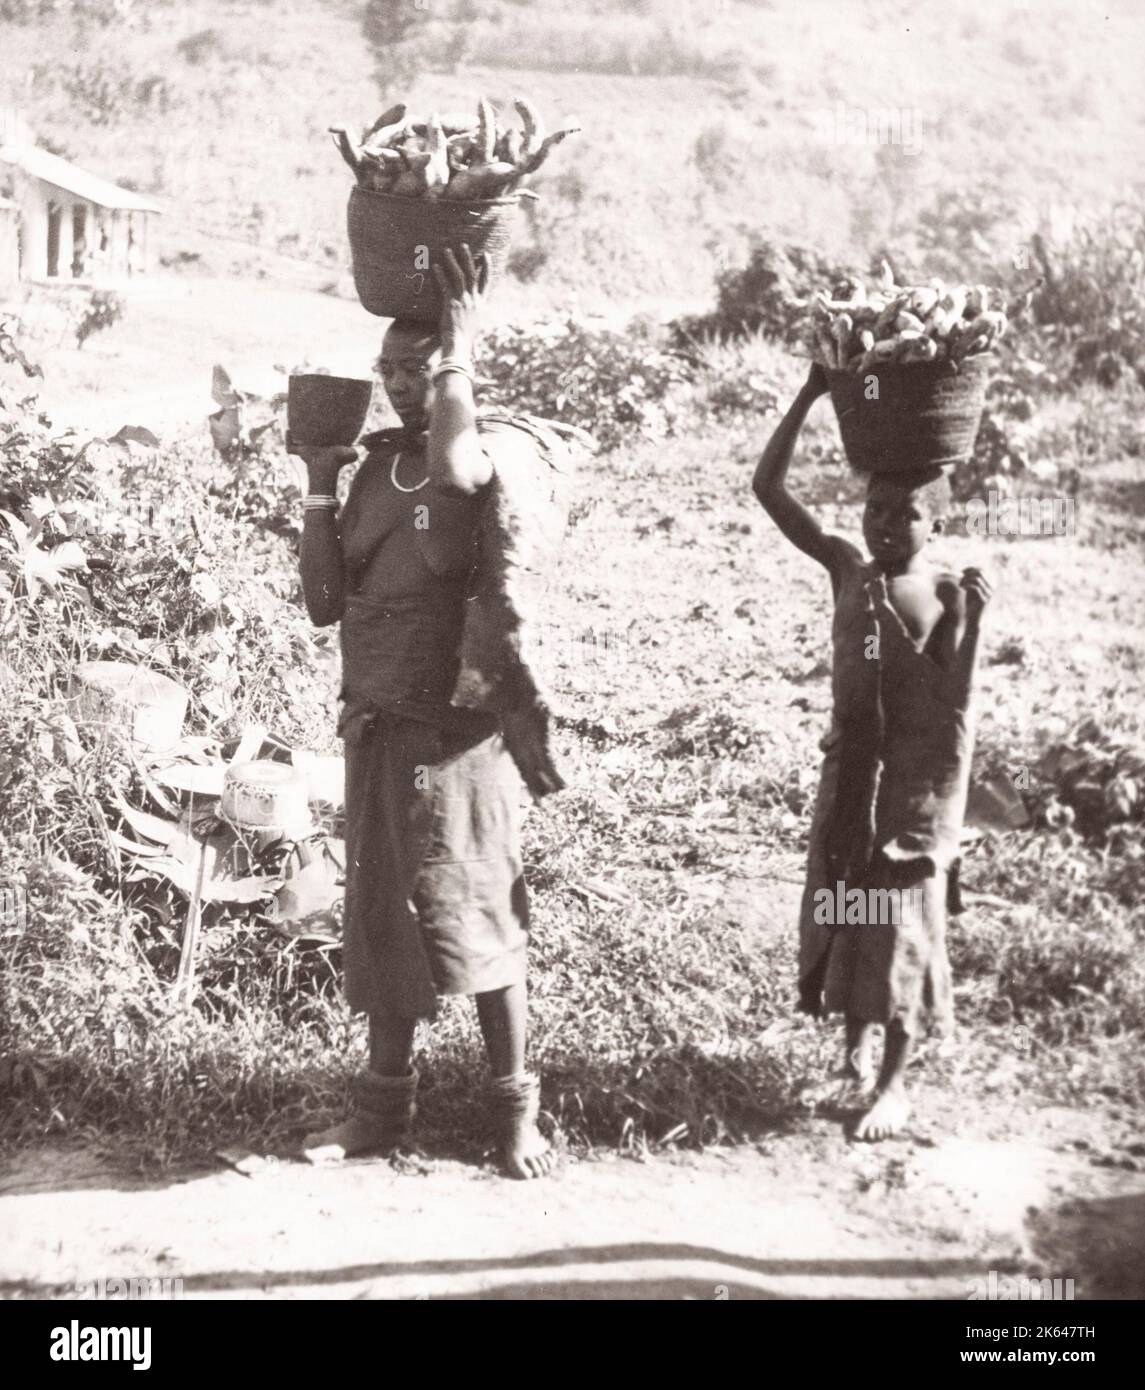 1940s Afrique de l'est - Ouganda - Groupe tribal Chigga - mise sur le marché avec des patates douces Photographie par un officier de recrutement de l'armée britannique stationnés en Afrique de l'est et au Moyen-Orient pendant la Seconde Guerre mondiale Banque D'Images